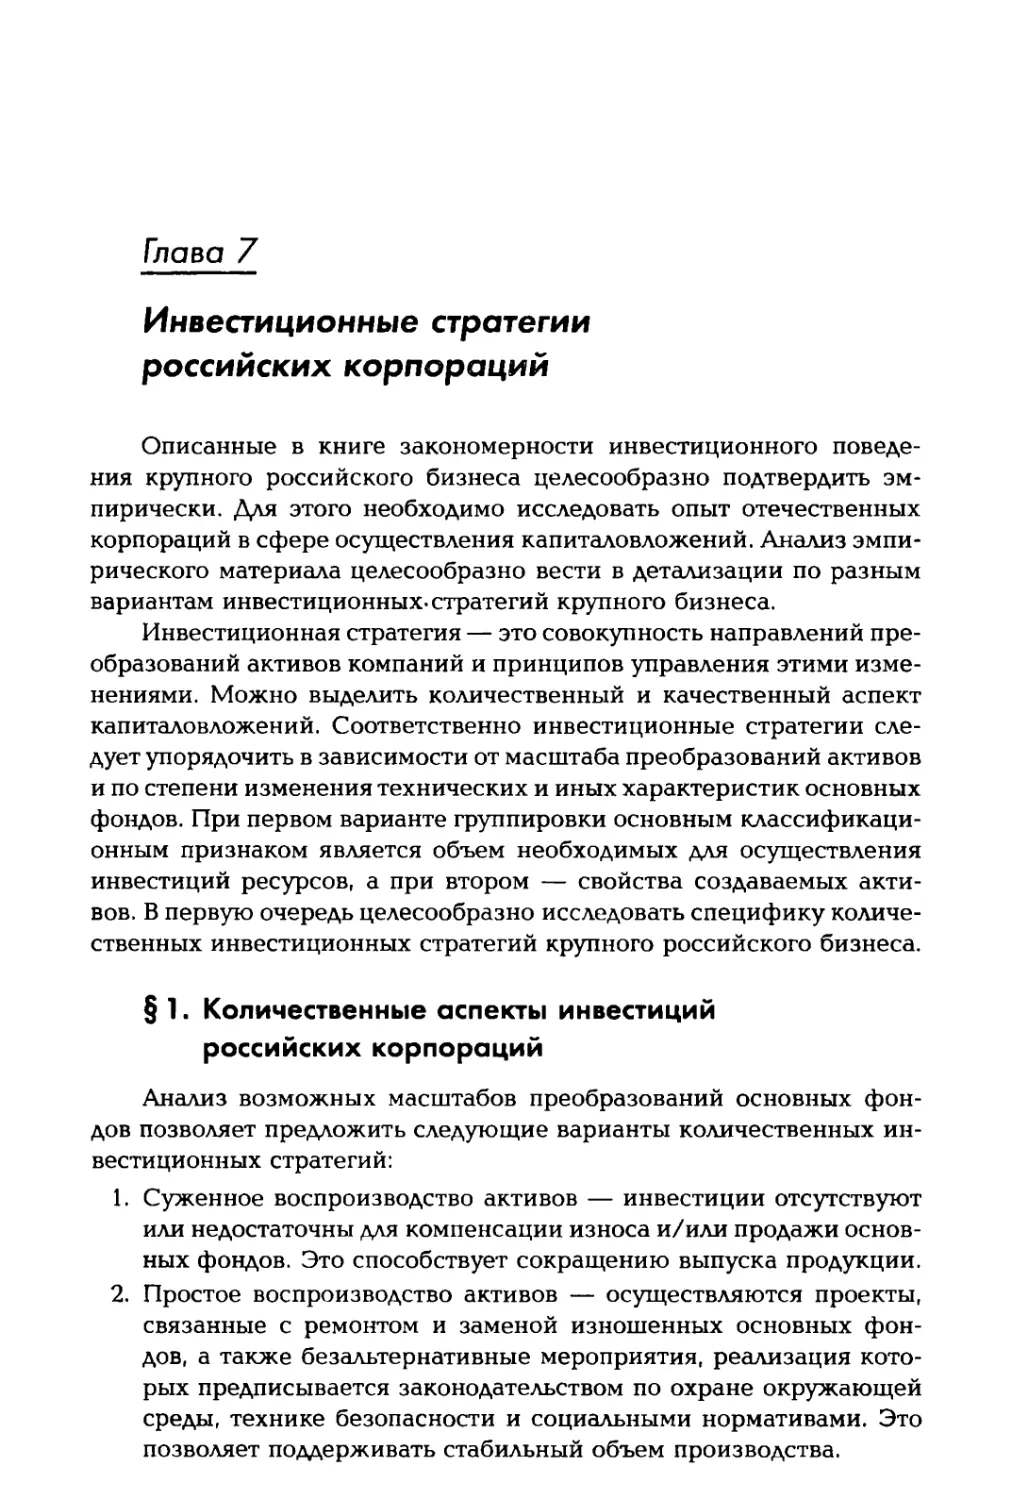 Глава 7. Инвестиционные стратегии российских корпораций